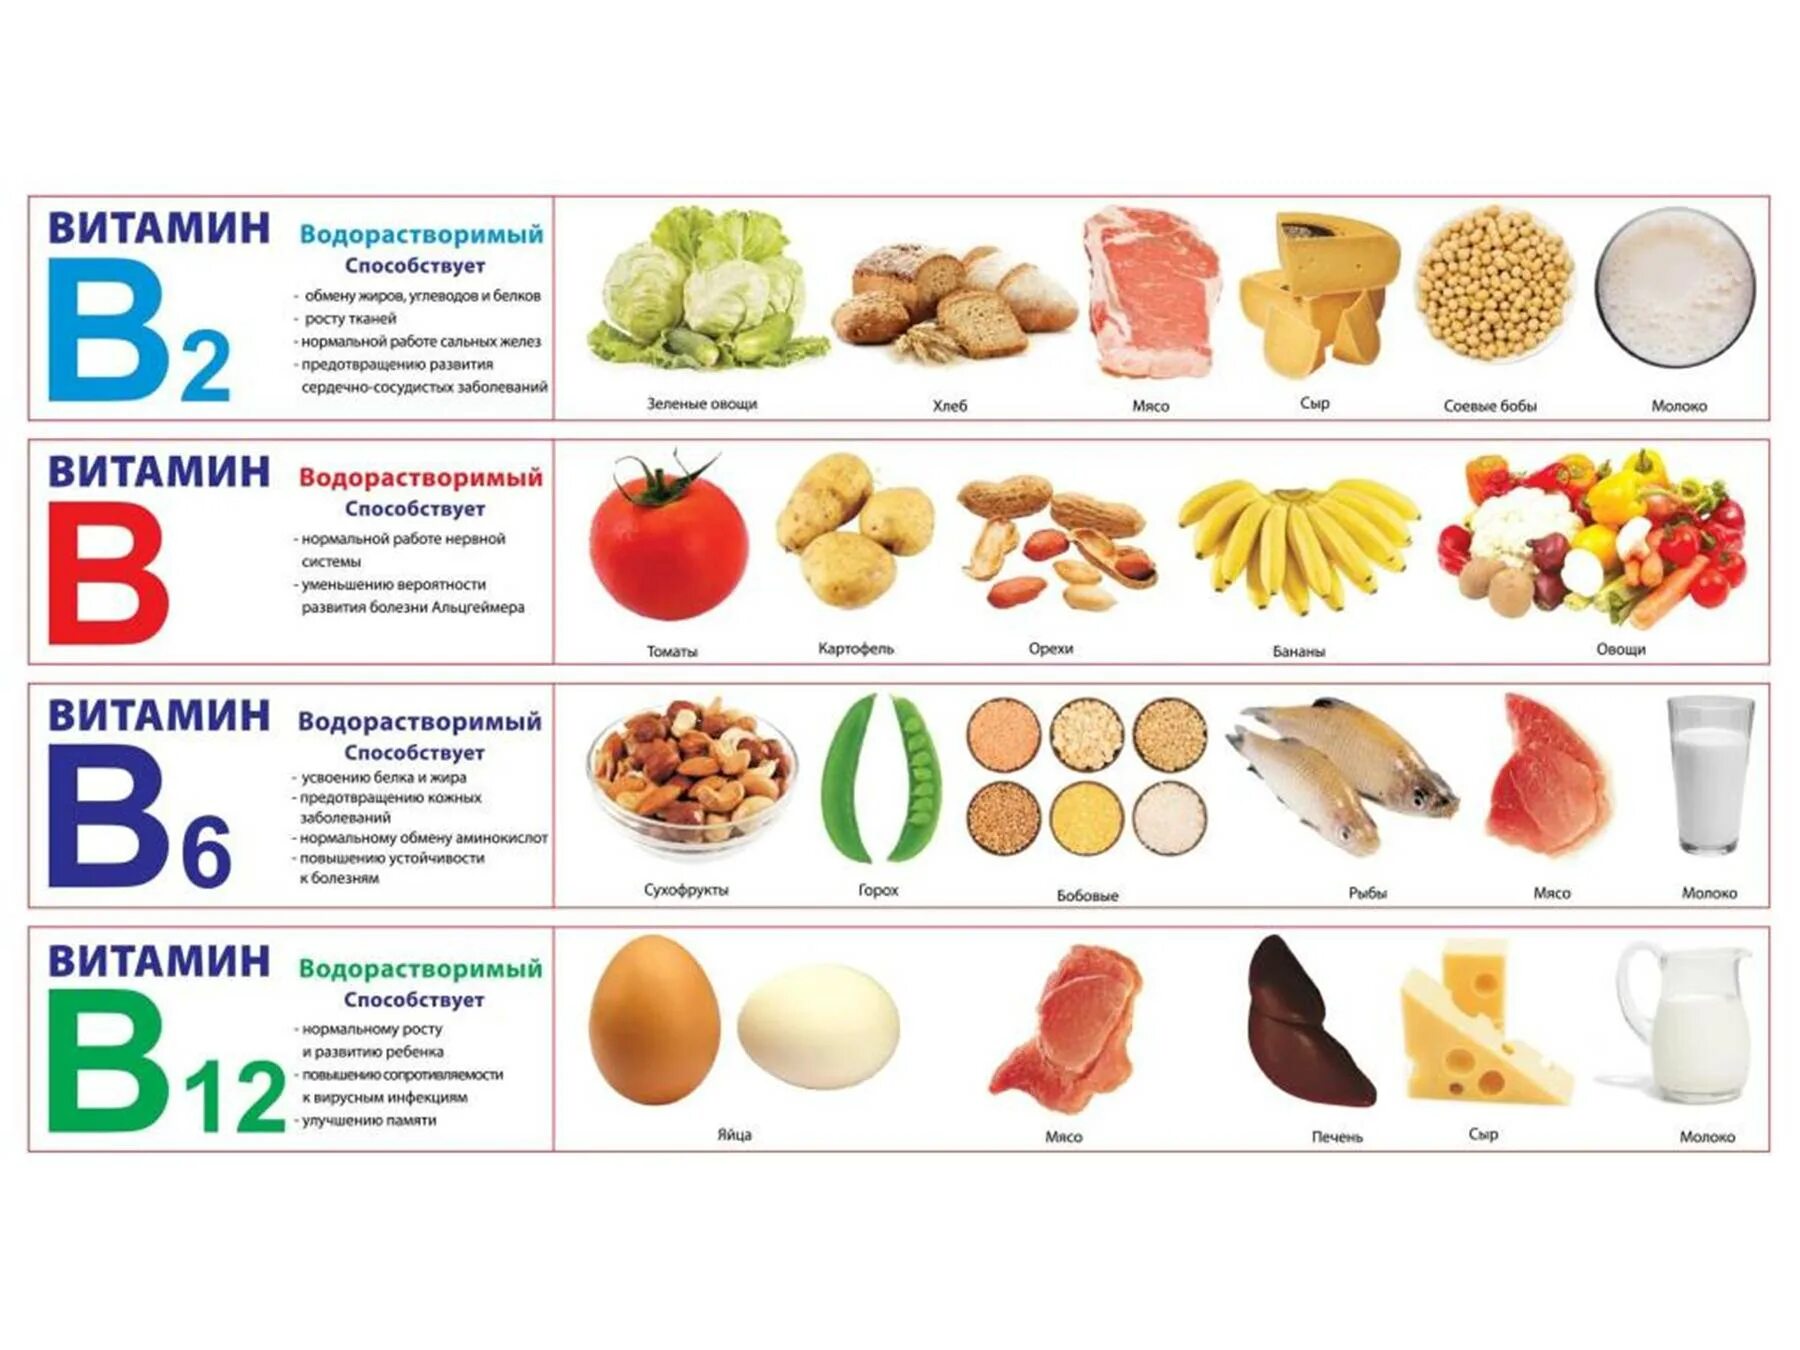 Витамин в 8 в продуктах. Витамины в пищевых продуктах. Здоровое питание таблица витаминов. Правильное питание витамины. Продукты здорового питания таблица.